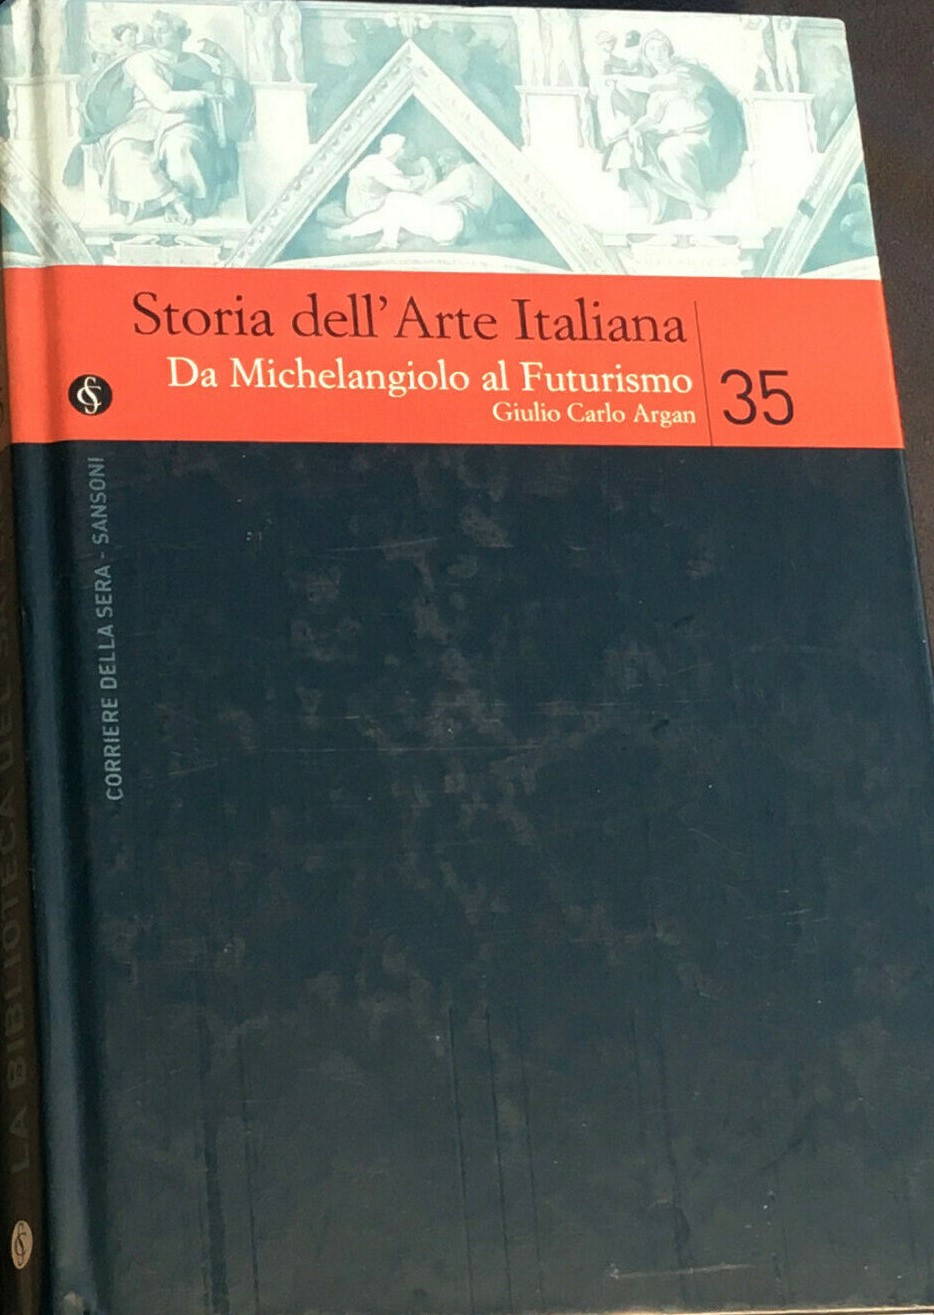 Copertina di Storia dell'Arte Italiana vol. 35